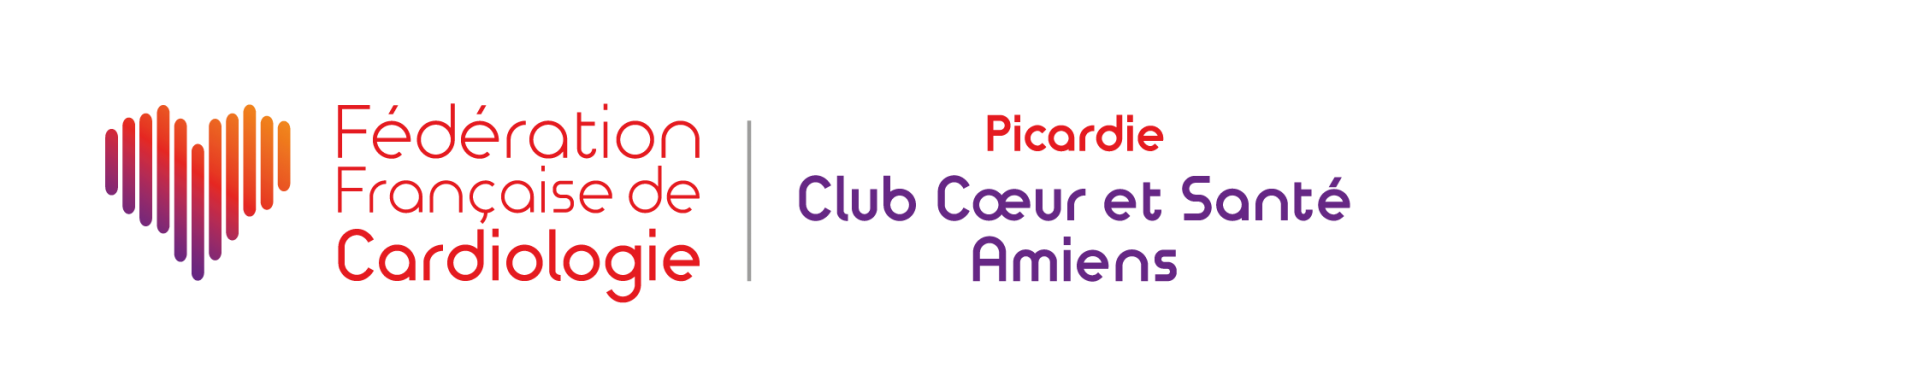 Présentation du Club Coeur et Santé d'Amiens